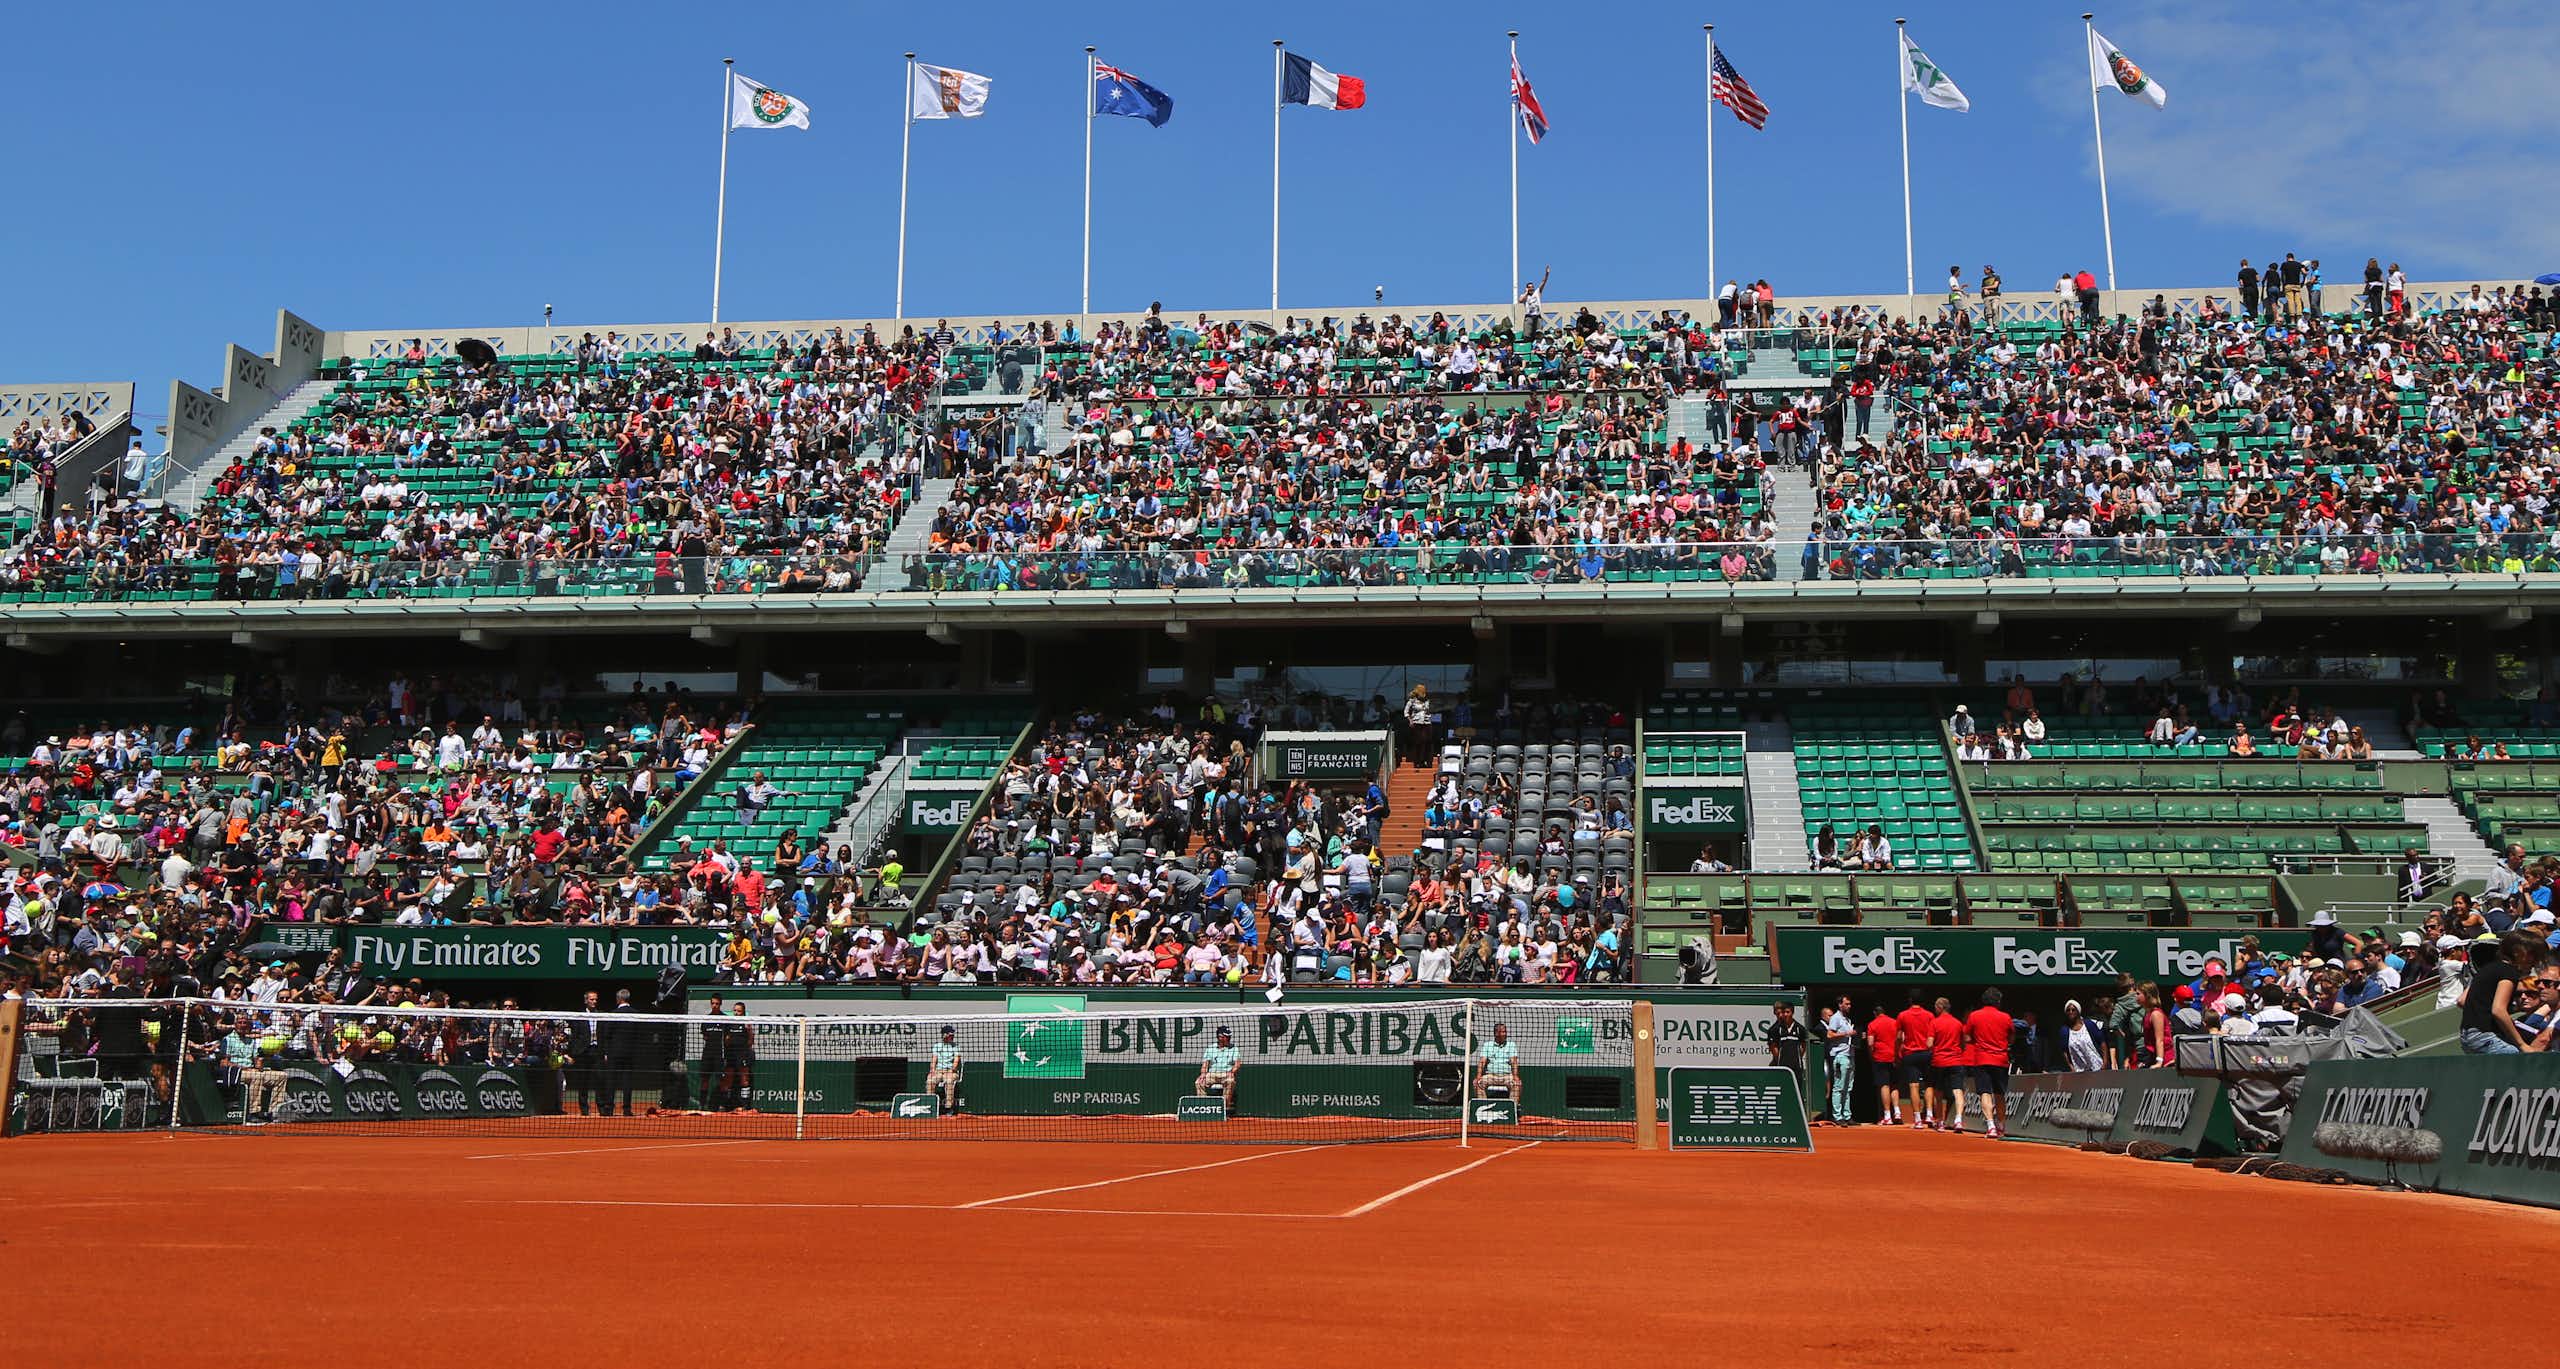 Une vue de Roland Garros (terrain et gradins)